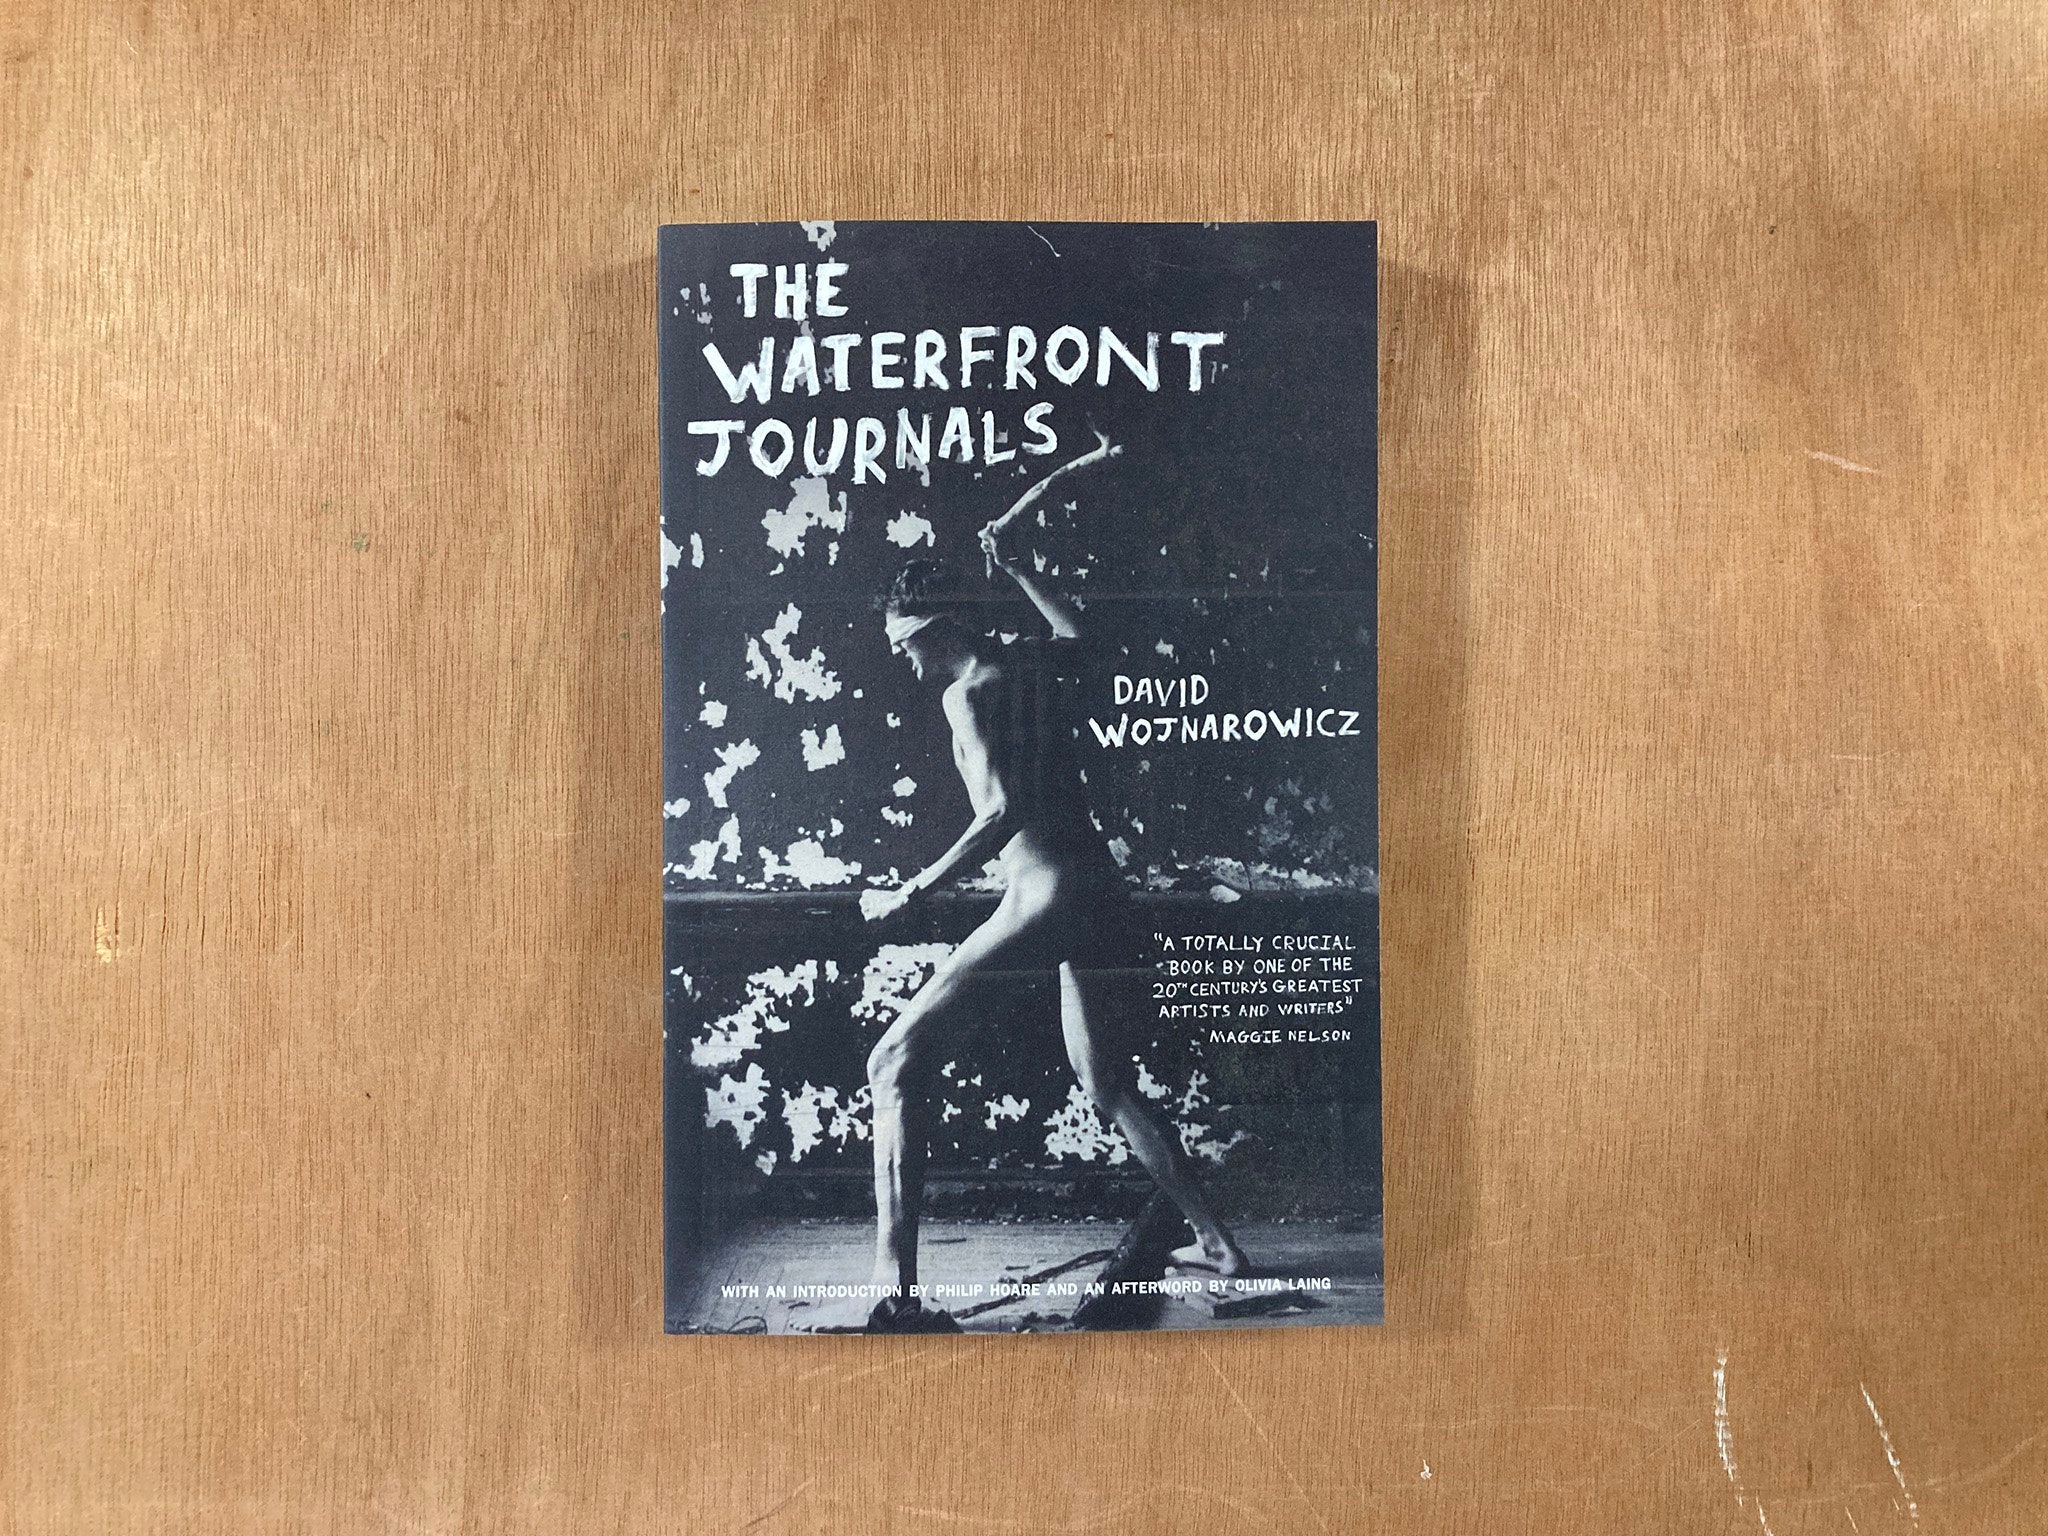 THE WATERFRONT JOURNALS by David Wojnarowicz